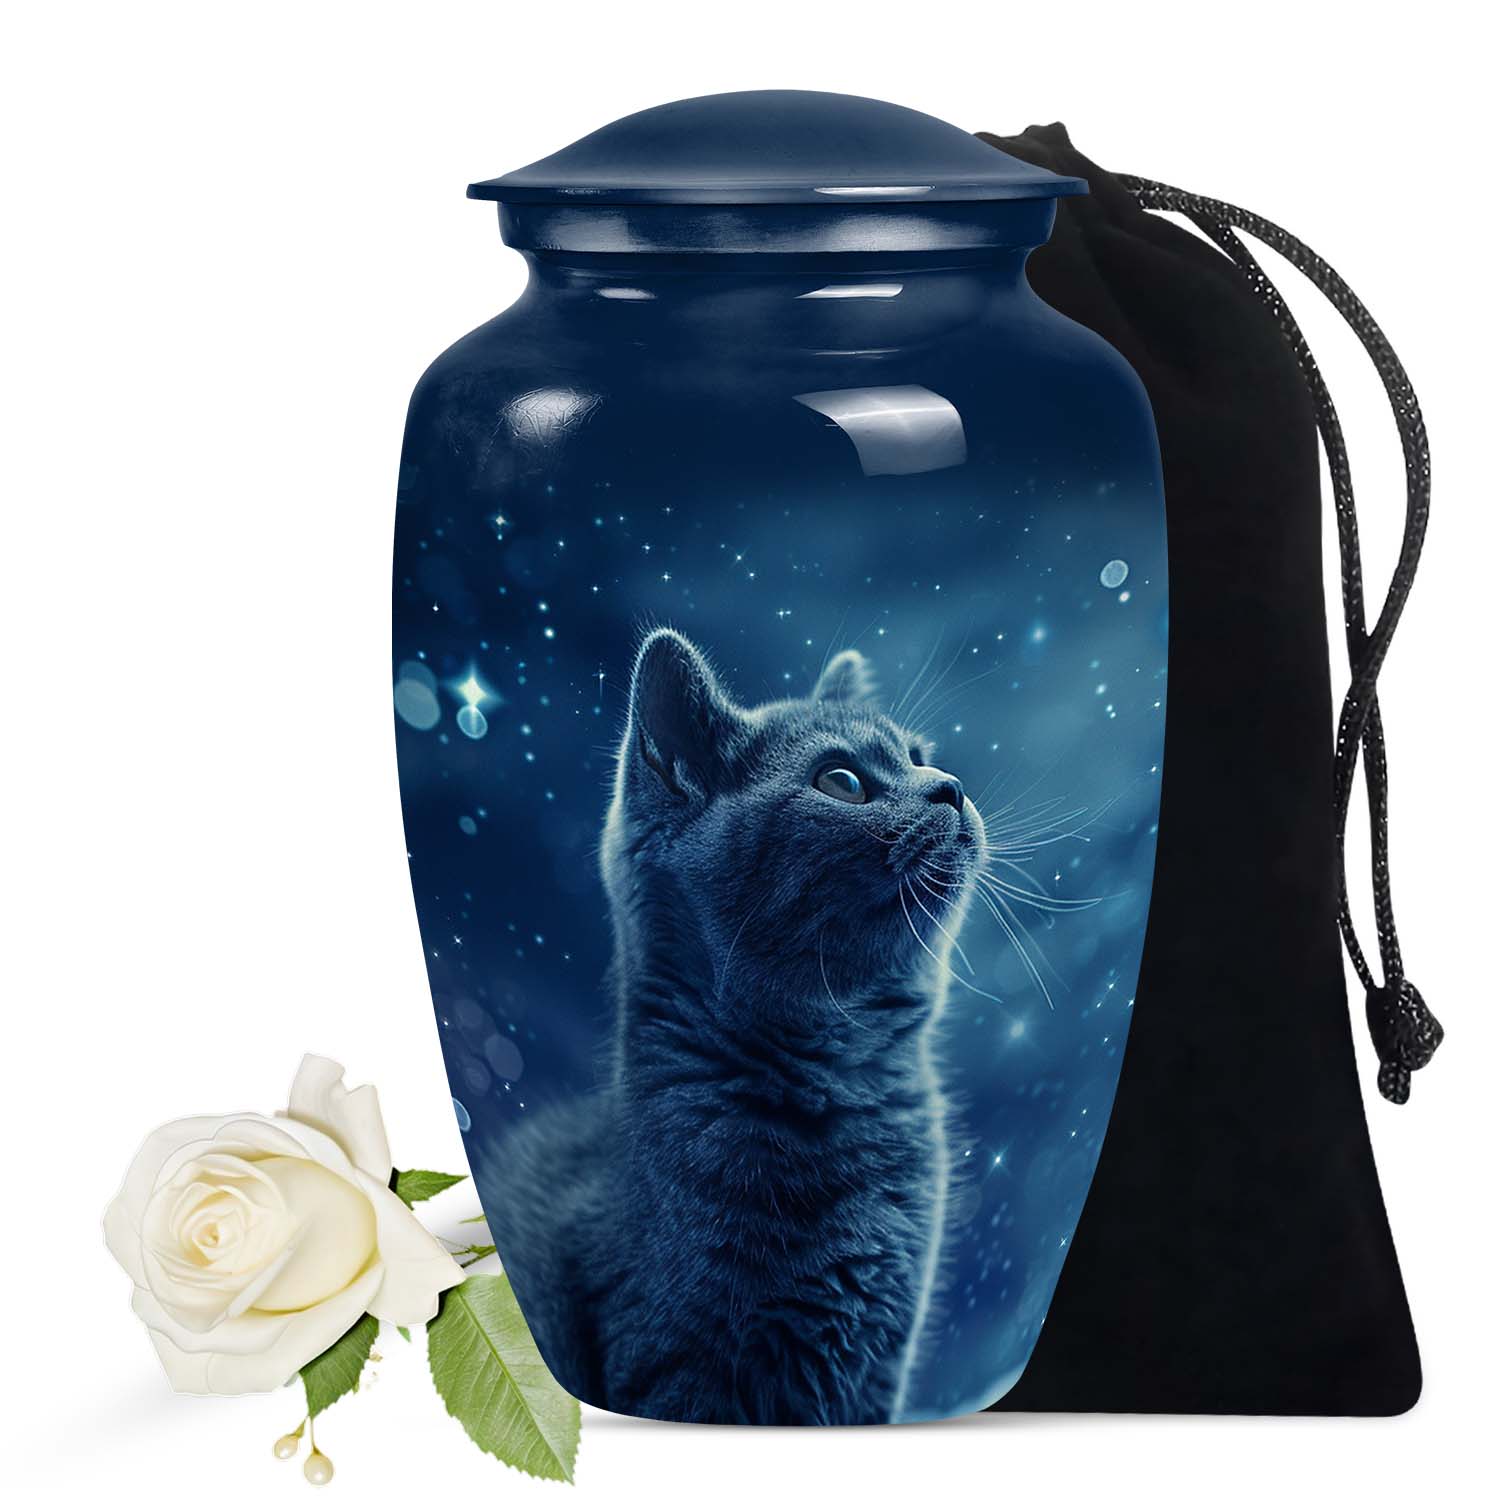 Unique Pet Cremation Urn For Cat | Perfect Memorial Urn For Cat